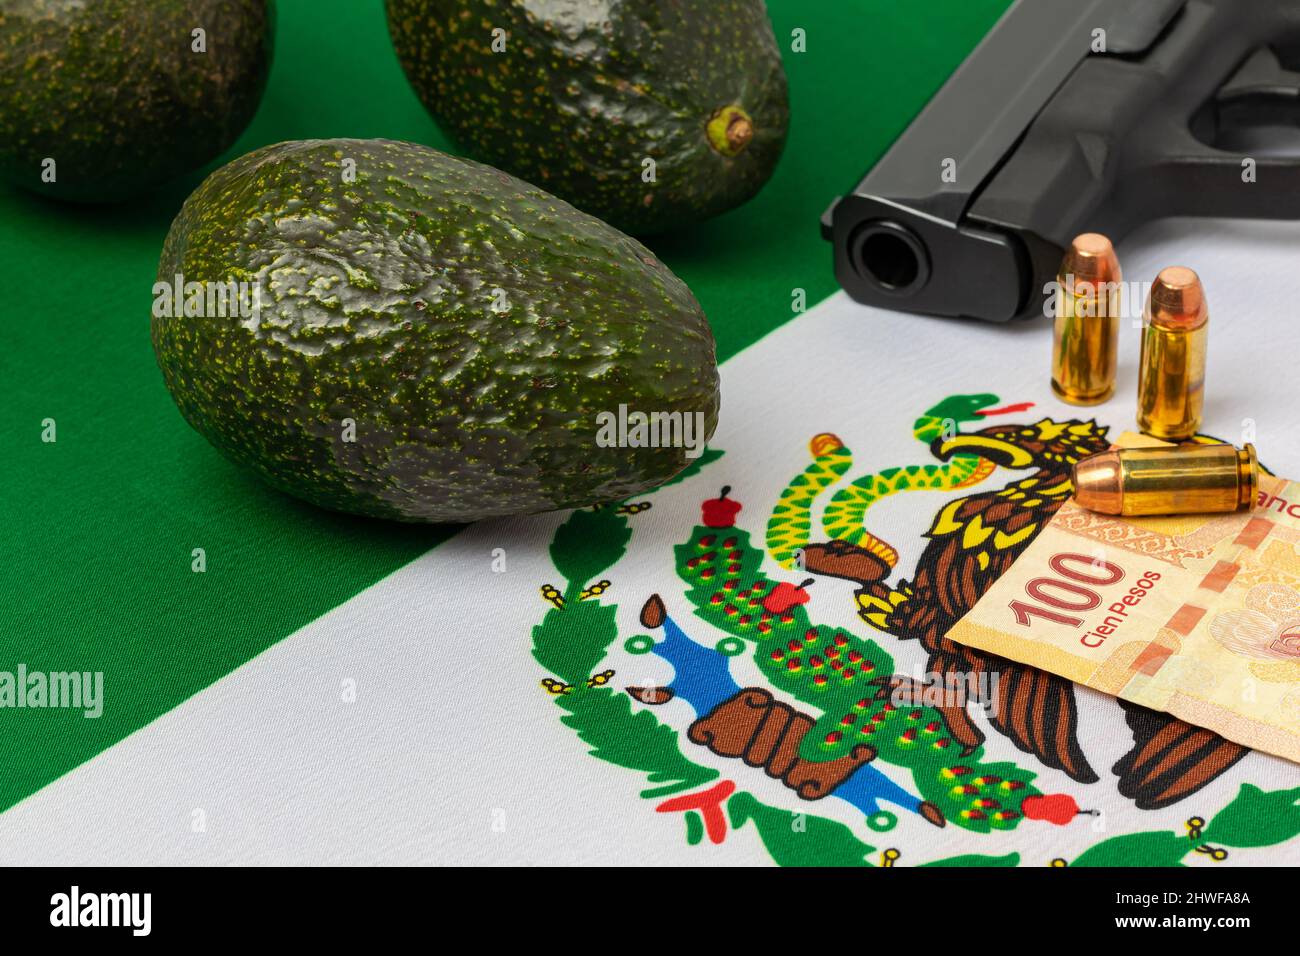 Avocados, Mexico flag and gun. Mexican drug cartel extortion, violence and crime in avocado farming. Stock Photo